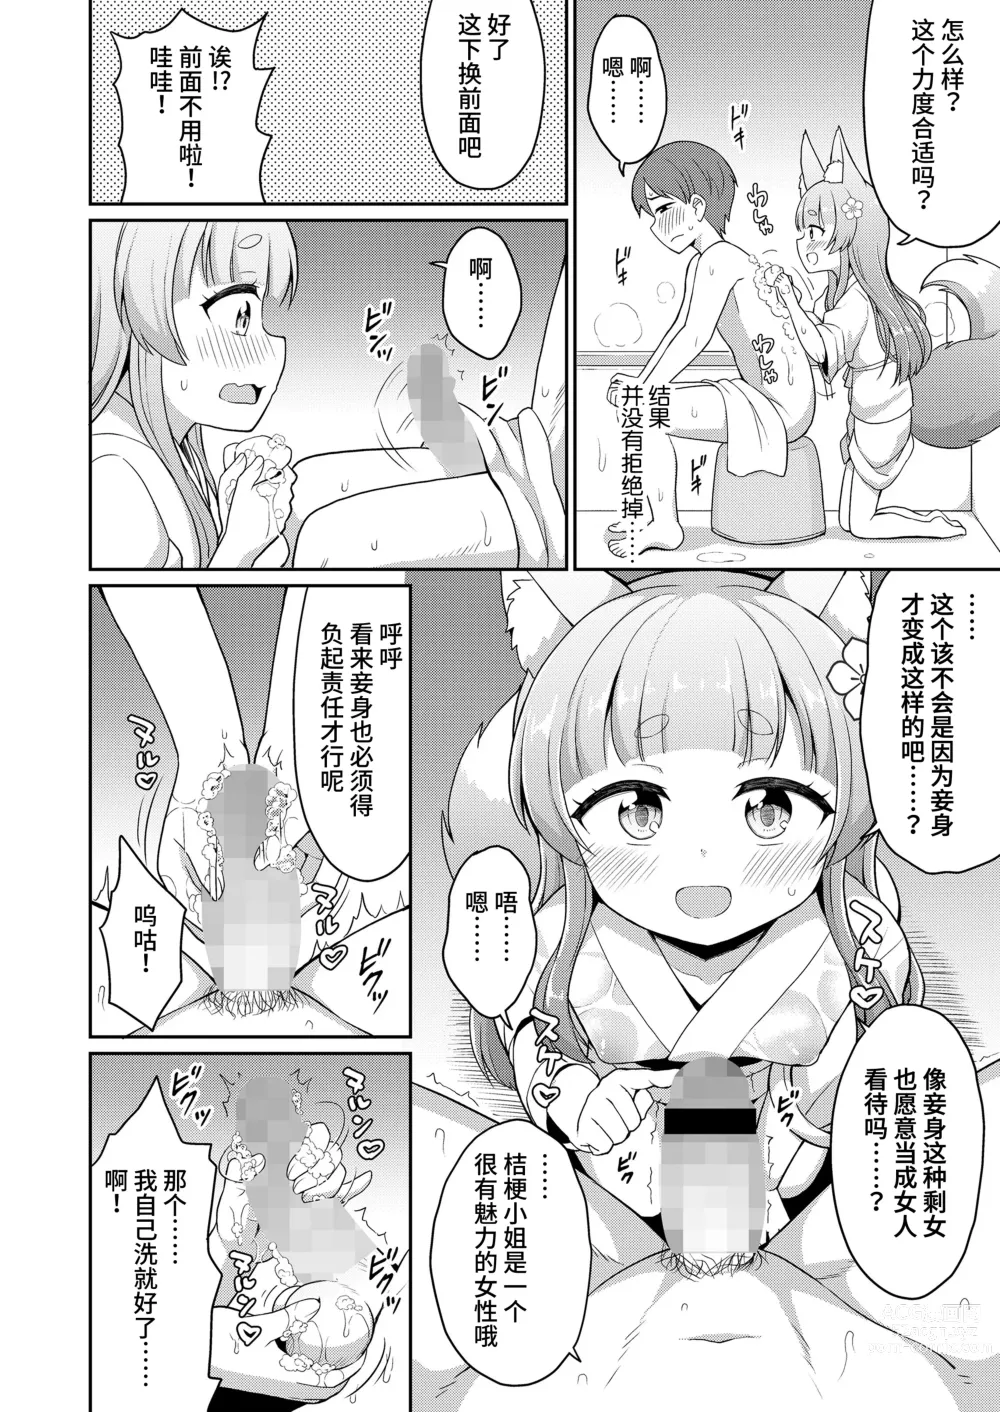 Page 10 of manga 婚活 1-2